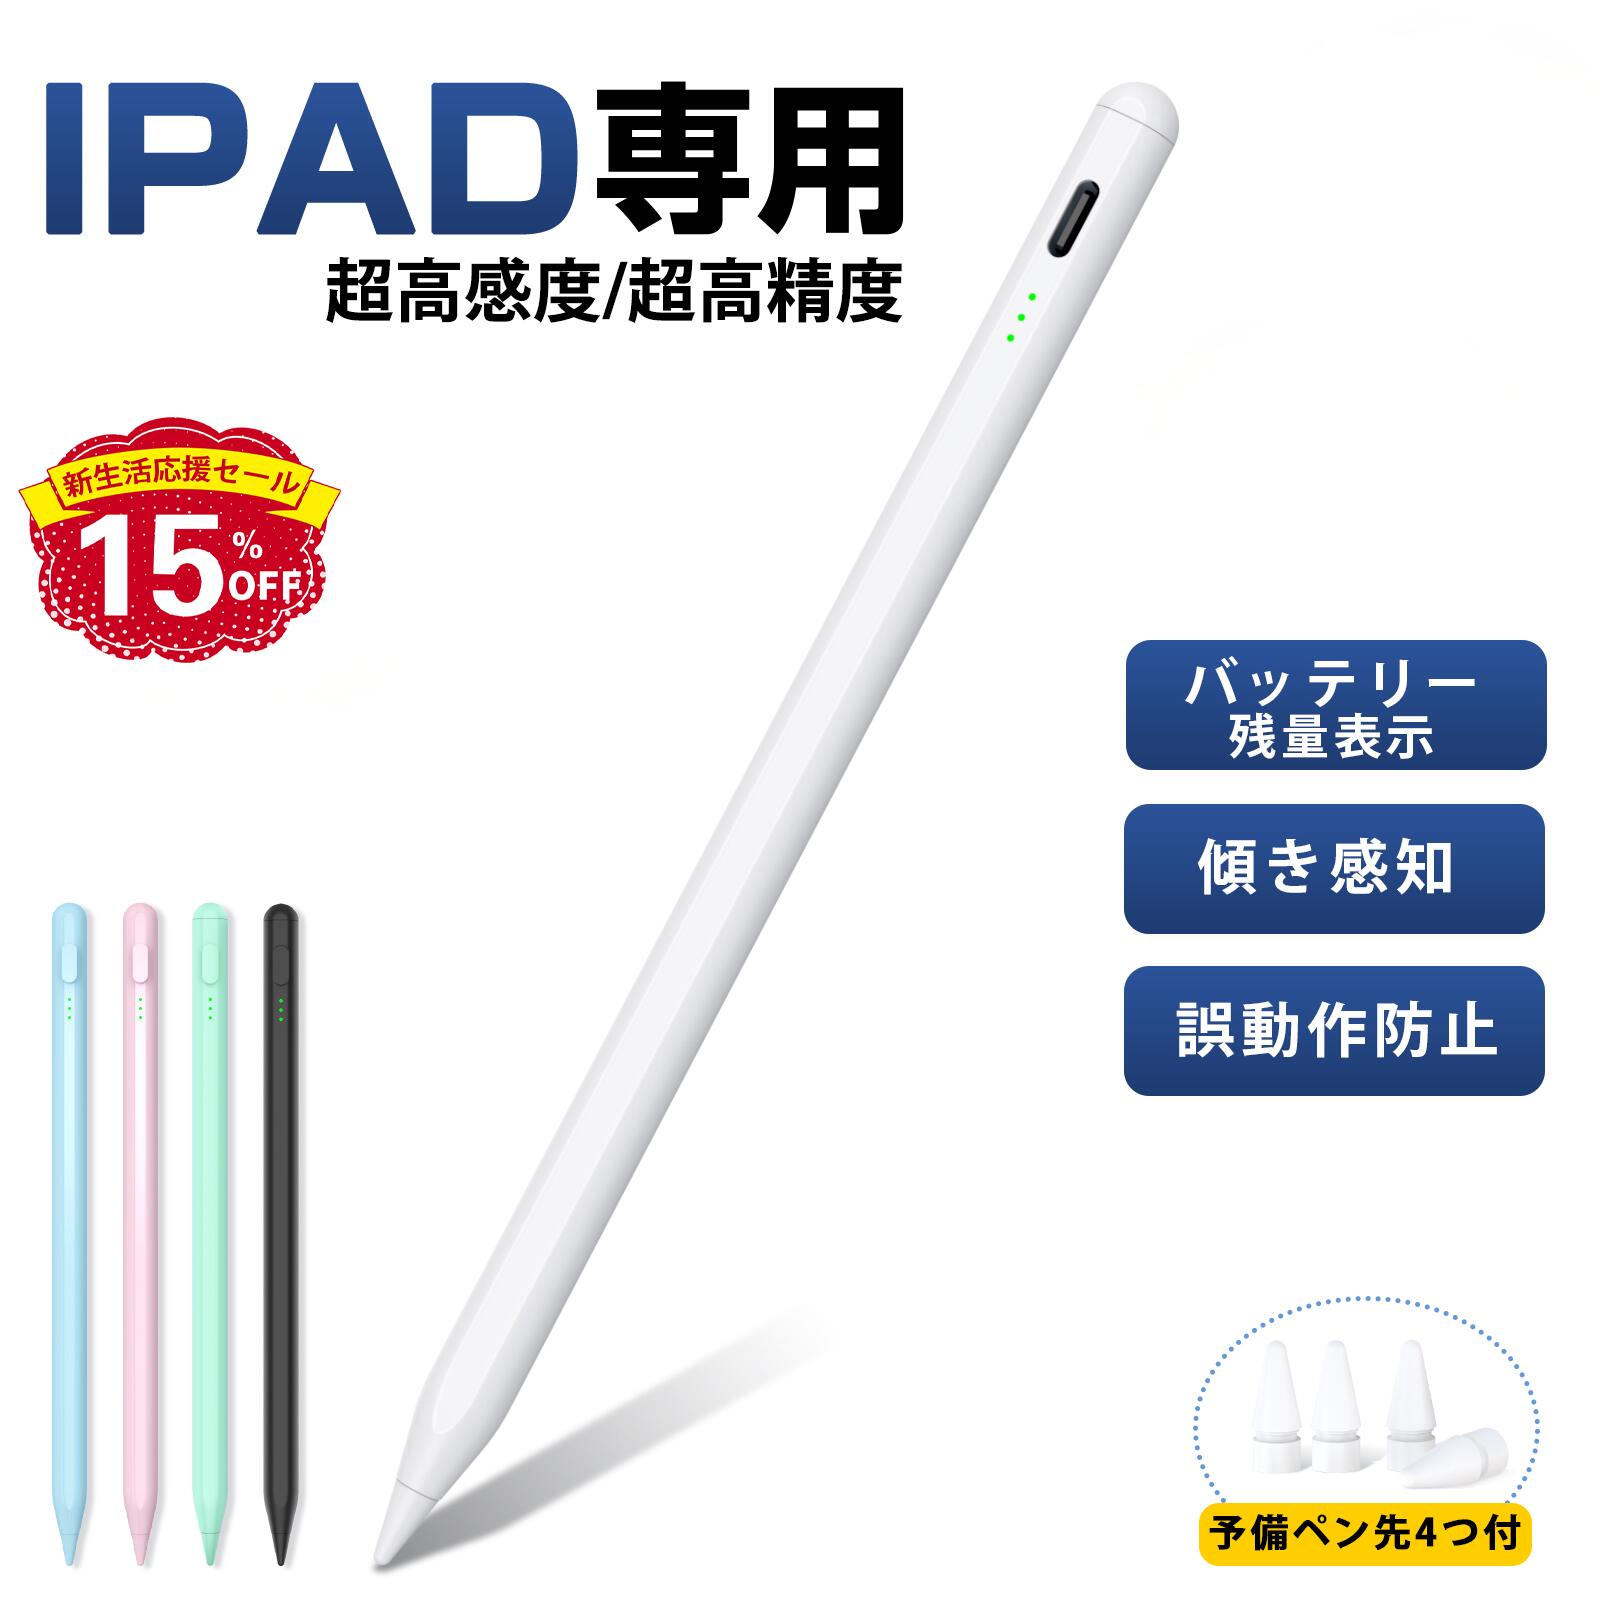 タッチペン iPad用ペン 互換品 急速充電 スタイラスペン 極細 高感度 iPad用pencil 傾き感知/磁気吸着/誤作動防止機能対応 軽量 耐摩 2018年以降iPad/iPad Pro/iPad air/iPad mini対応